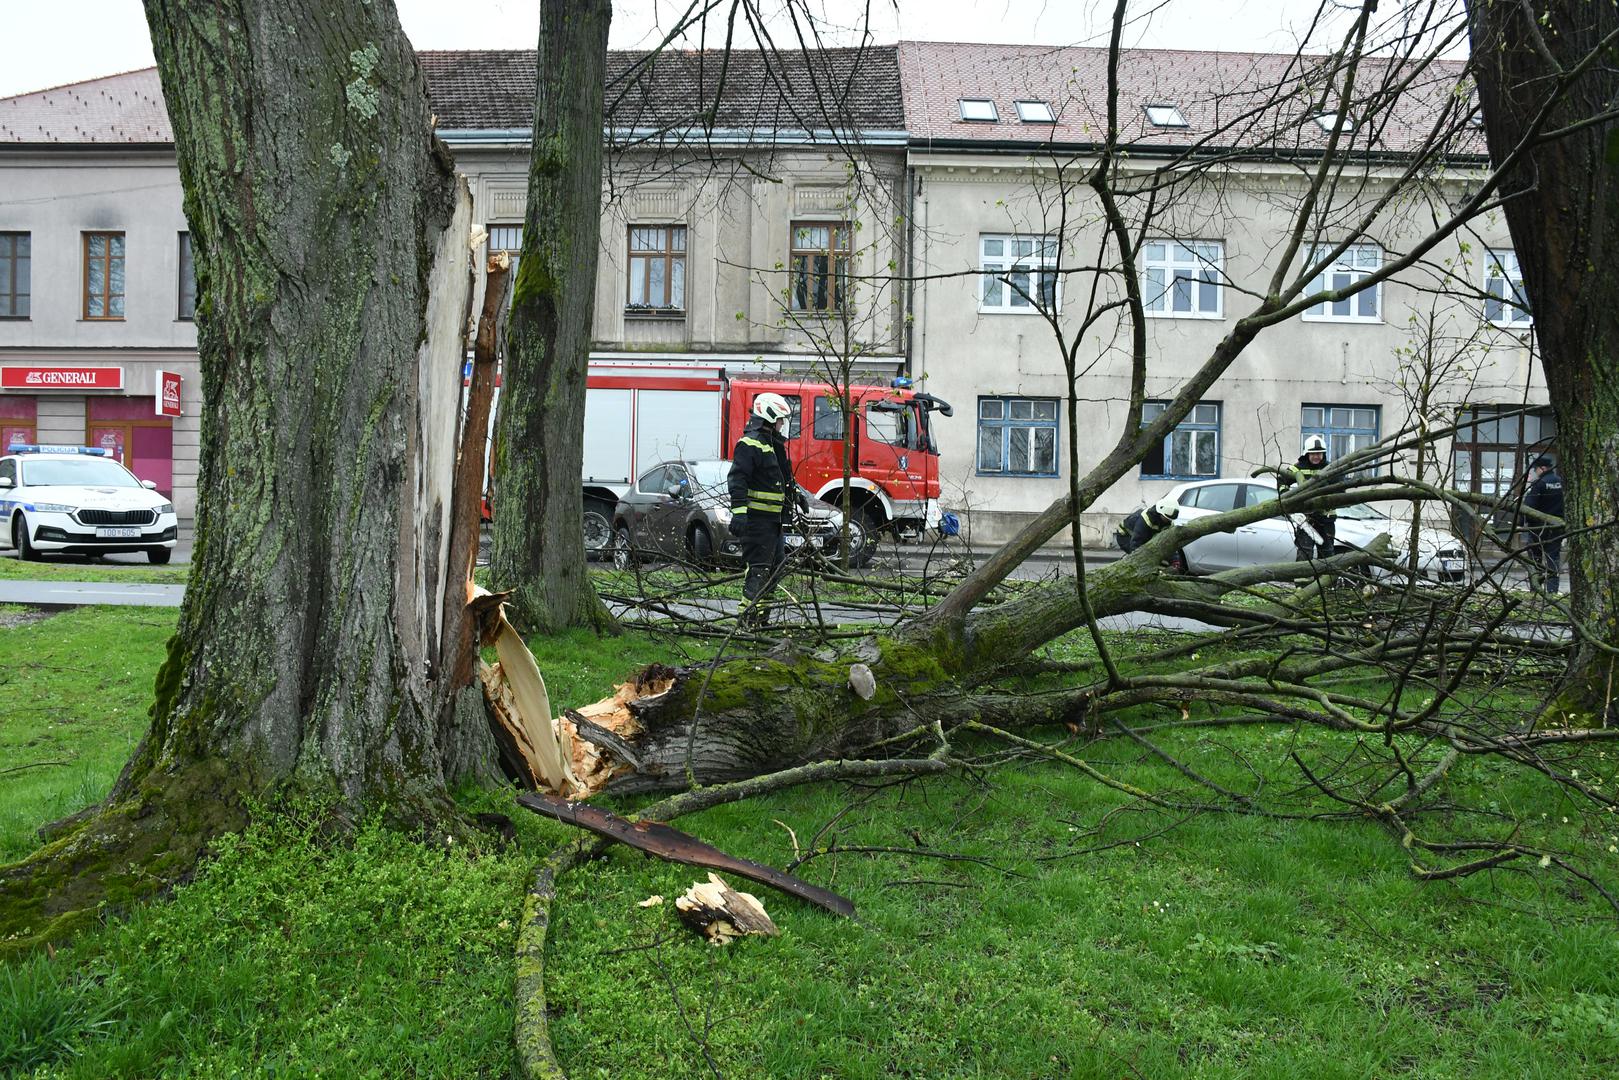 27.03.2023.,Sisak - Sisacki vatrogasci morali su rezati ostatke drveta koje je puknulo pod naletom jakog vjetra i ostetilo parkirani automobil u Rimskoj ulici.  Photo: Nikola Cutuk/PIXSELL